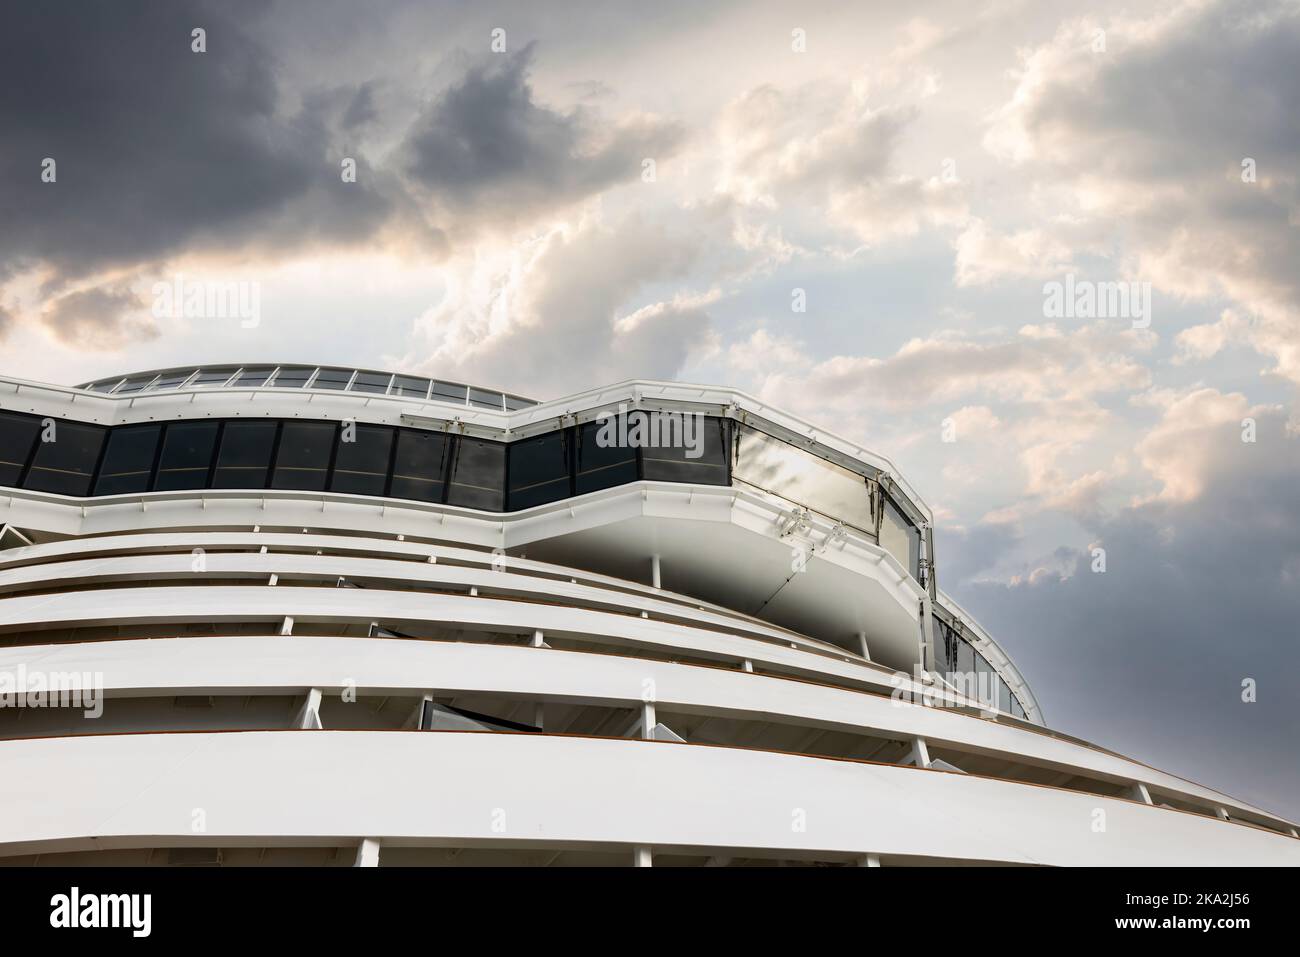 Crociera di lusso crociera vacanza nave navigazione ponte sulla barca moderna con bel cielo dietro al tramonto Foto Stock